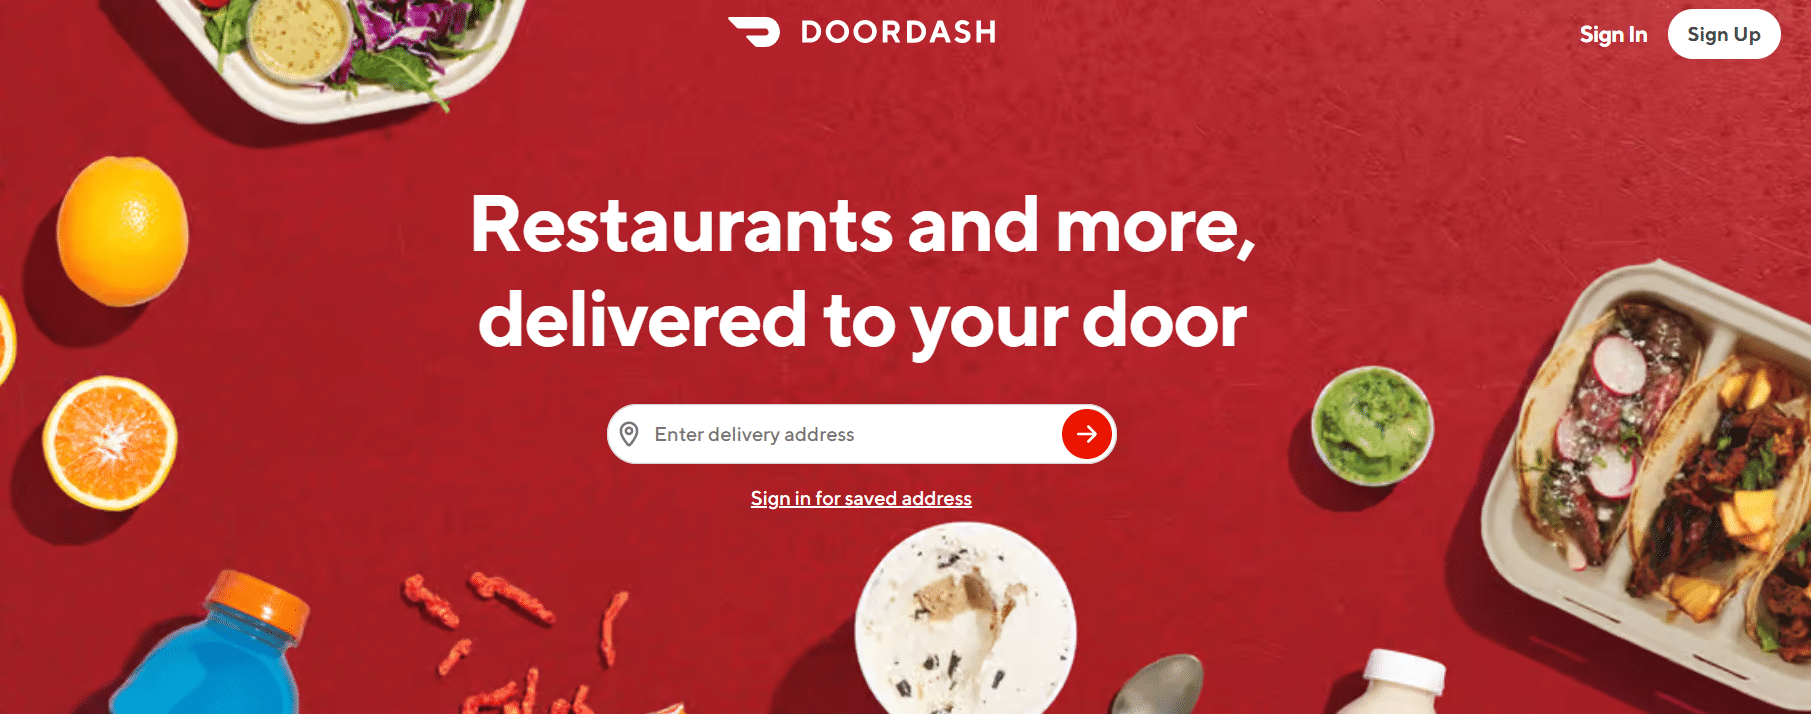 DoorDash official website